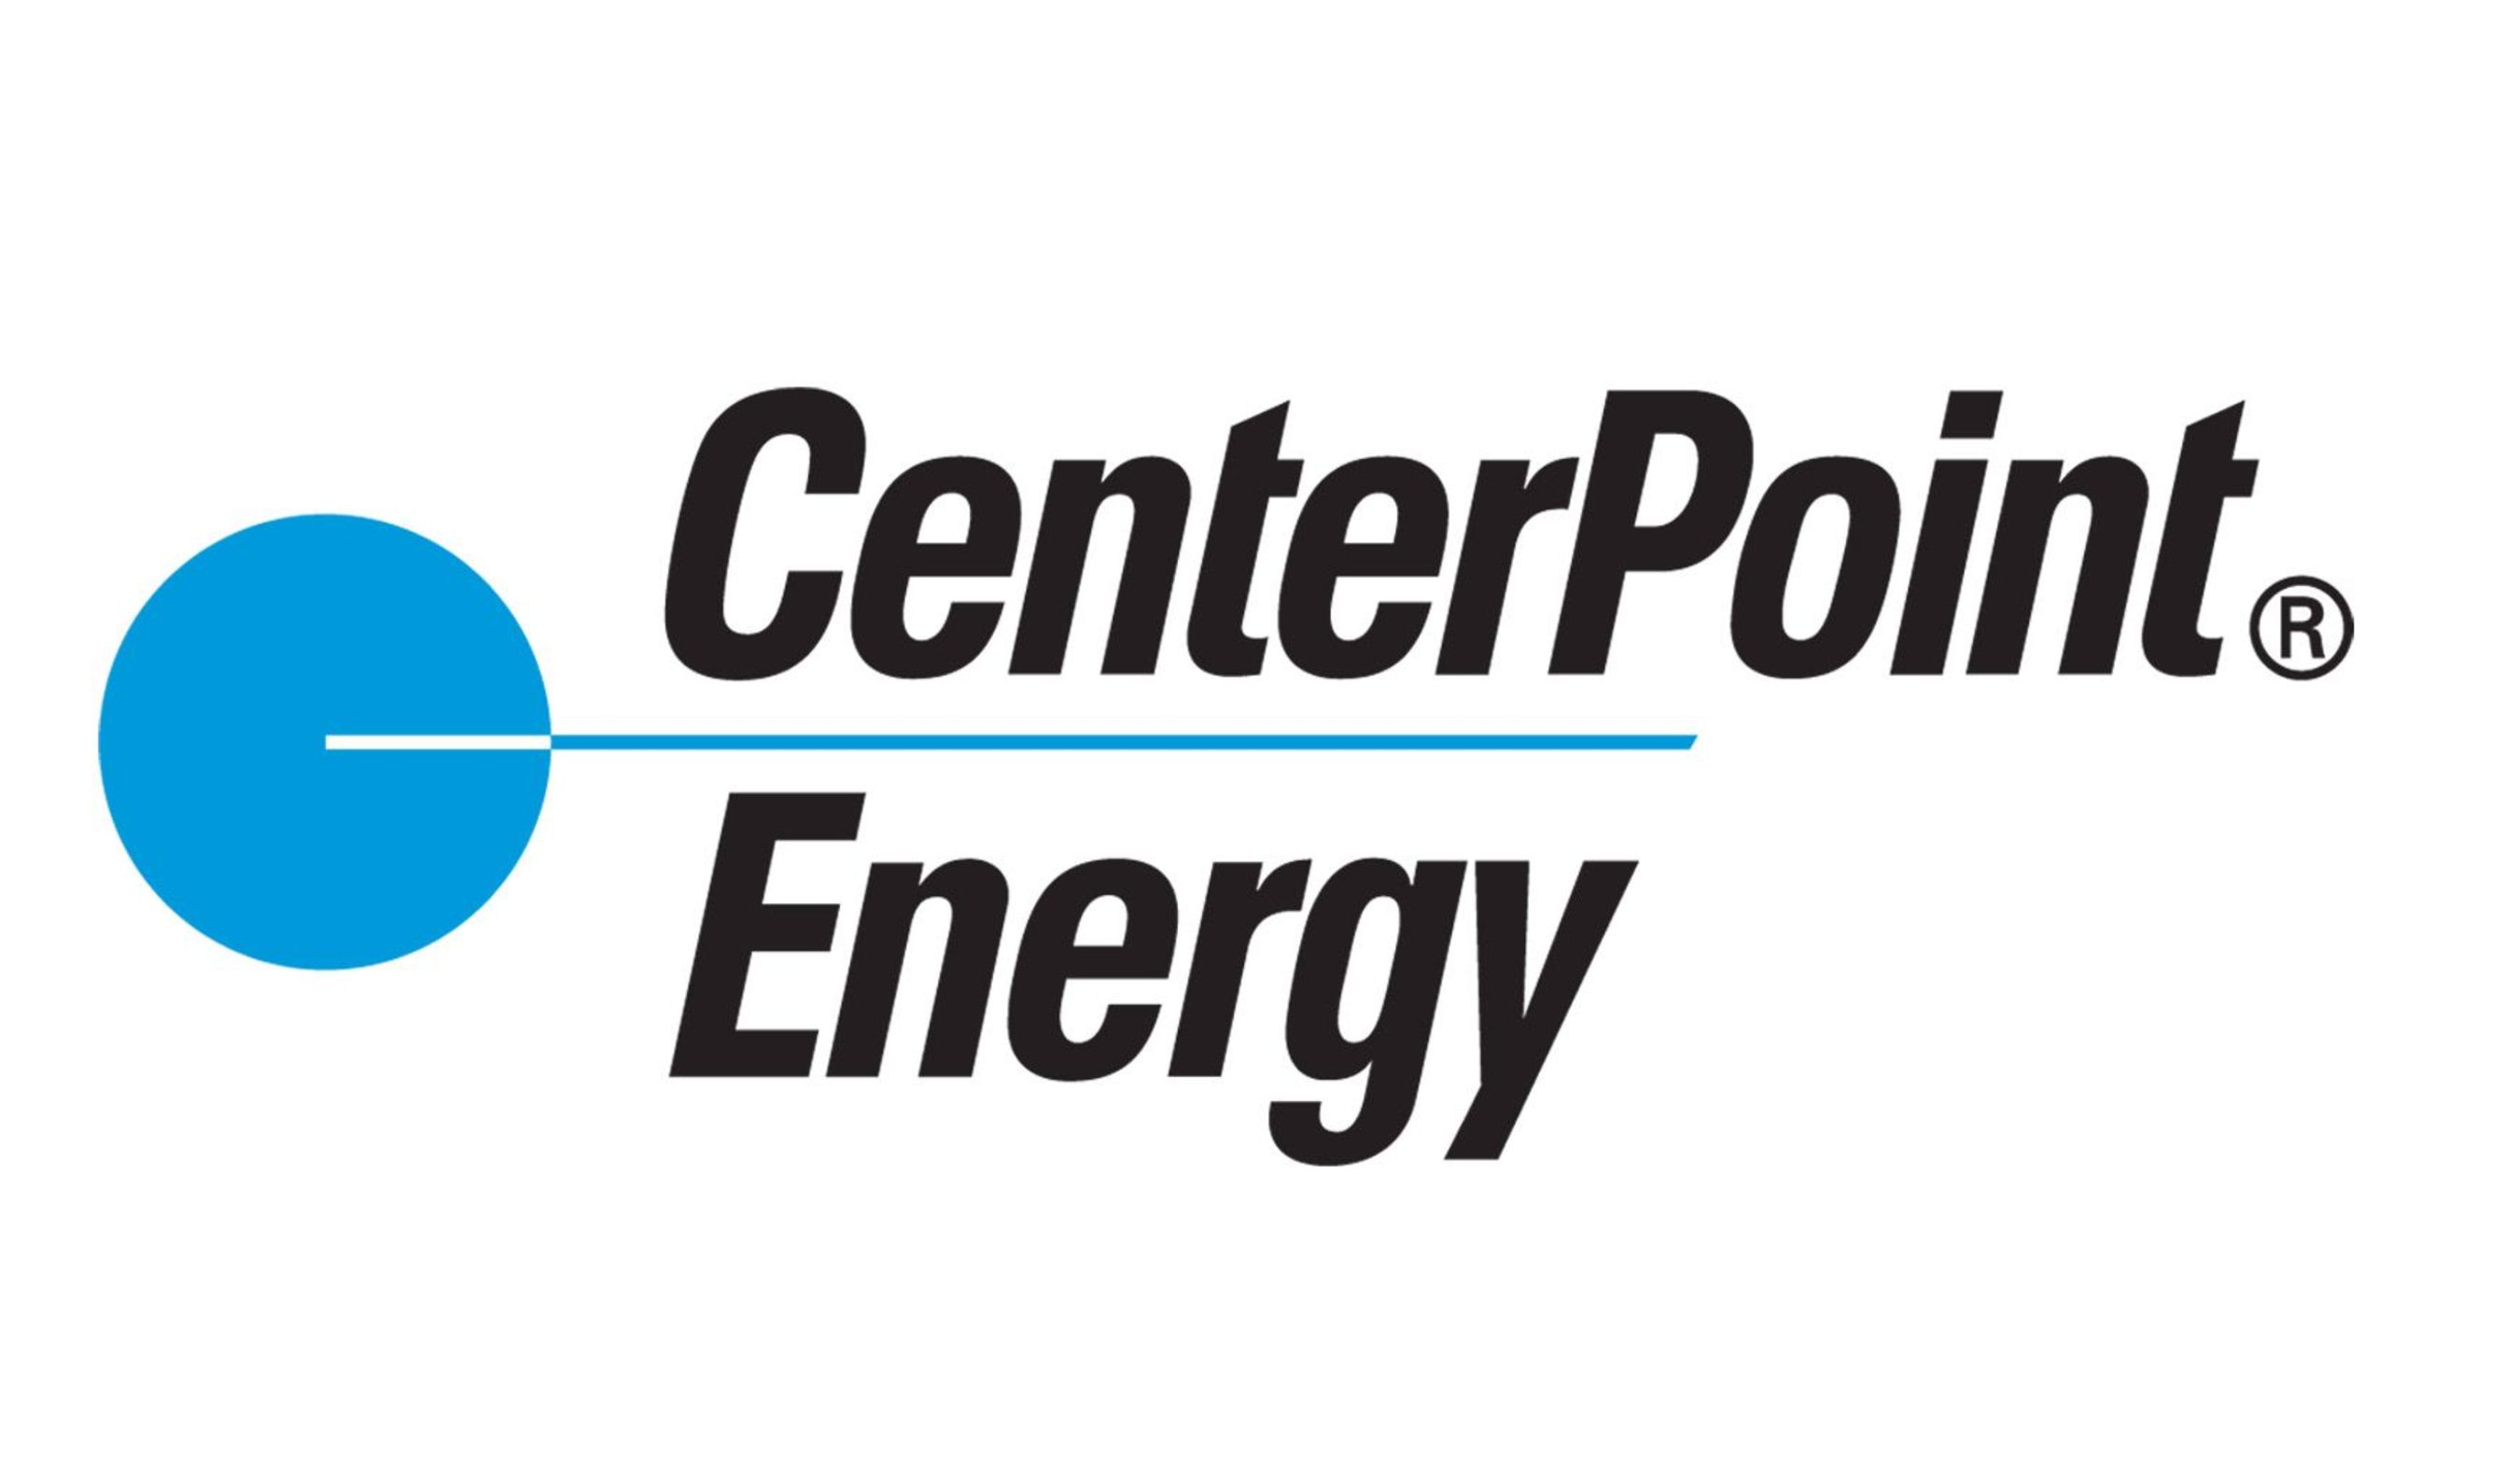 CenterPoint Energy logo. (PRNewsFoto) (PRNewsFoto/CENTERPOINT ENERGY)